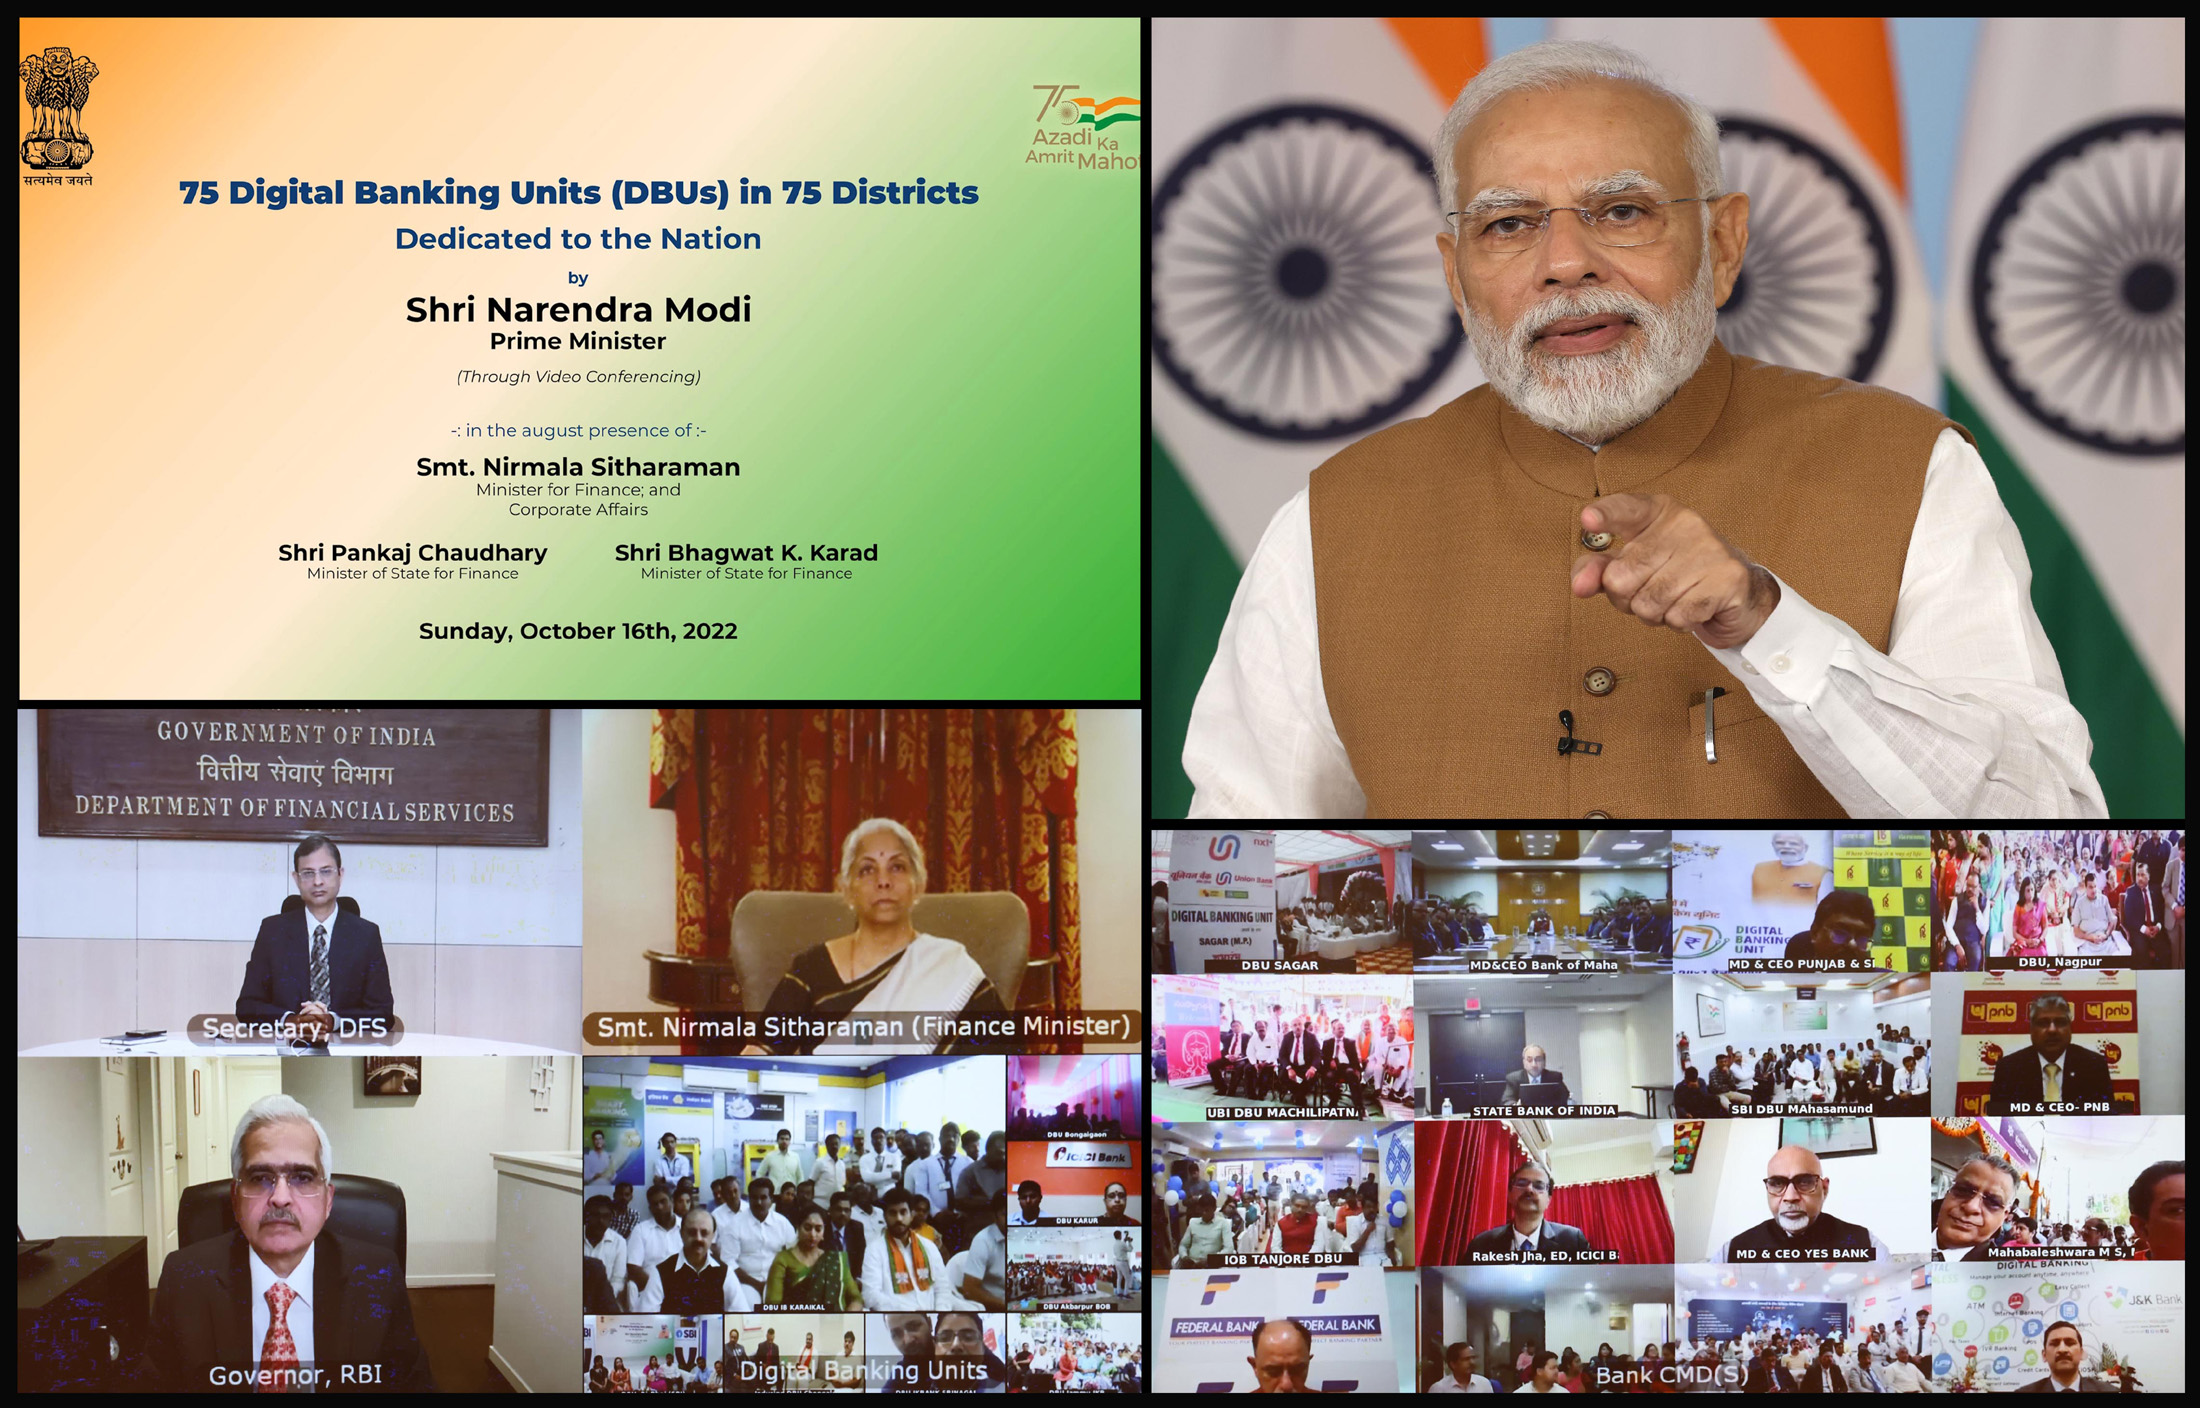 وزیر اعظم نے 75 اضلاع میں 75 ڈیجیٹل بینکنگ یونٹس کو قوم کے نام وقف کیا